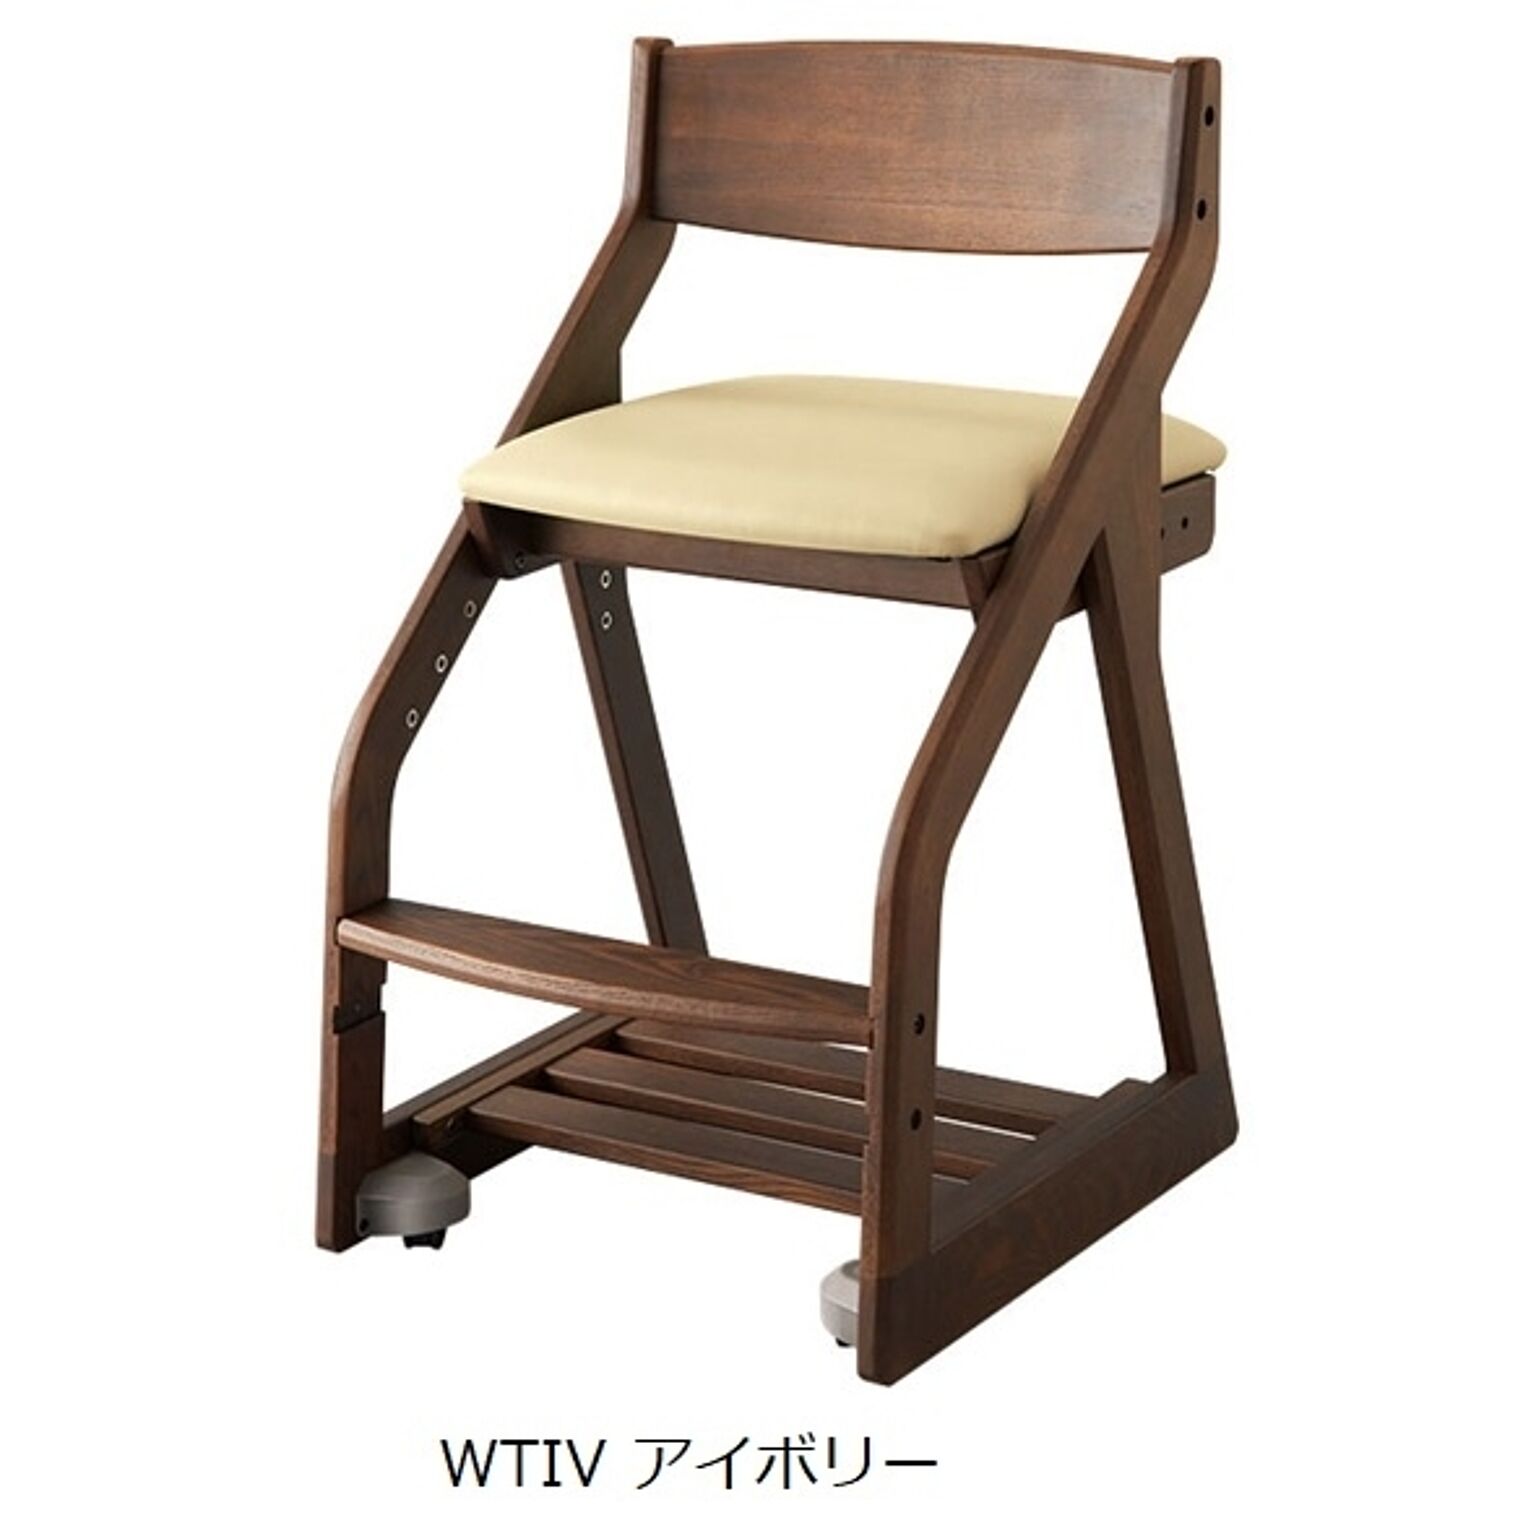 ビーノチェア 木製 幅43.4 奥行49.5 高さ76.5 カラー4色 組立式 座面高さ調節 キャスター付 タモムク材 デスクチェア 木製 椅子 学習イス KOIZUMI コイズミ 